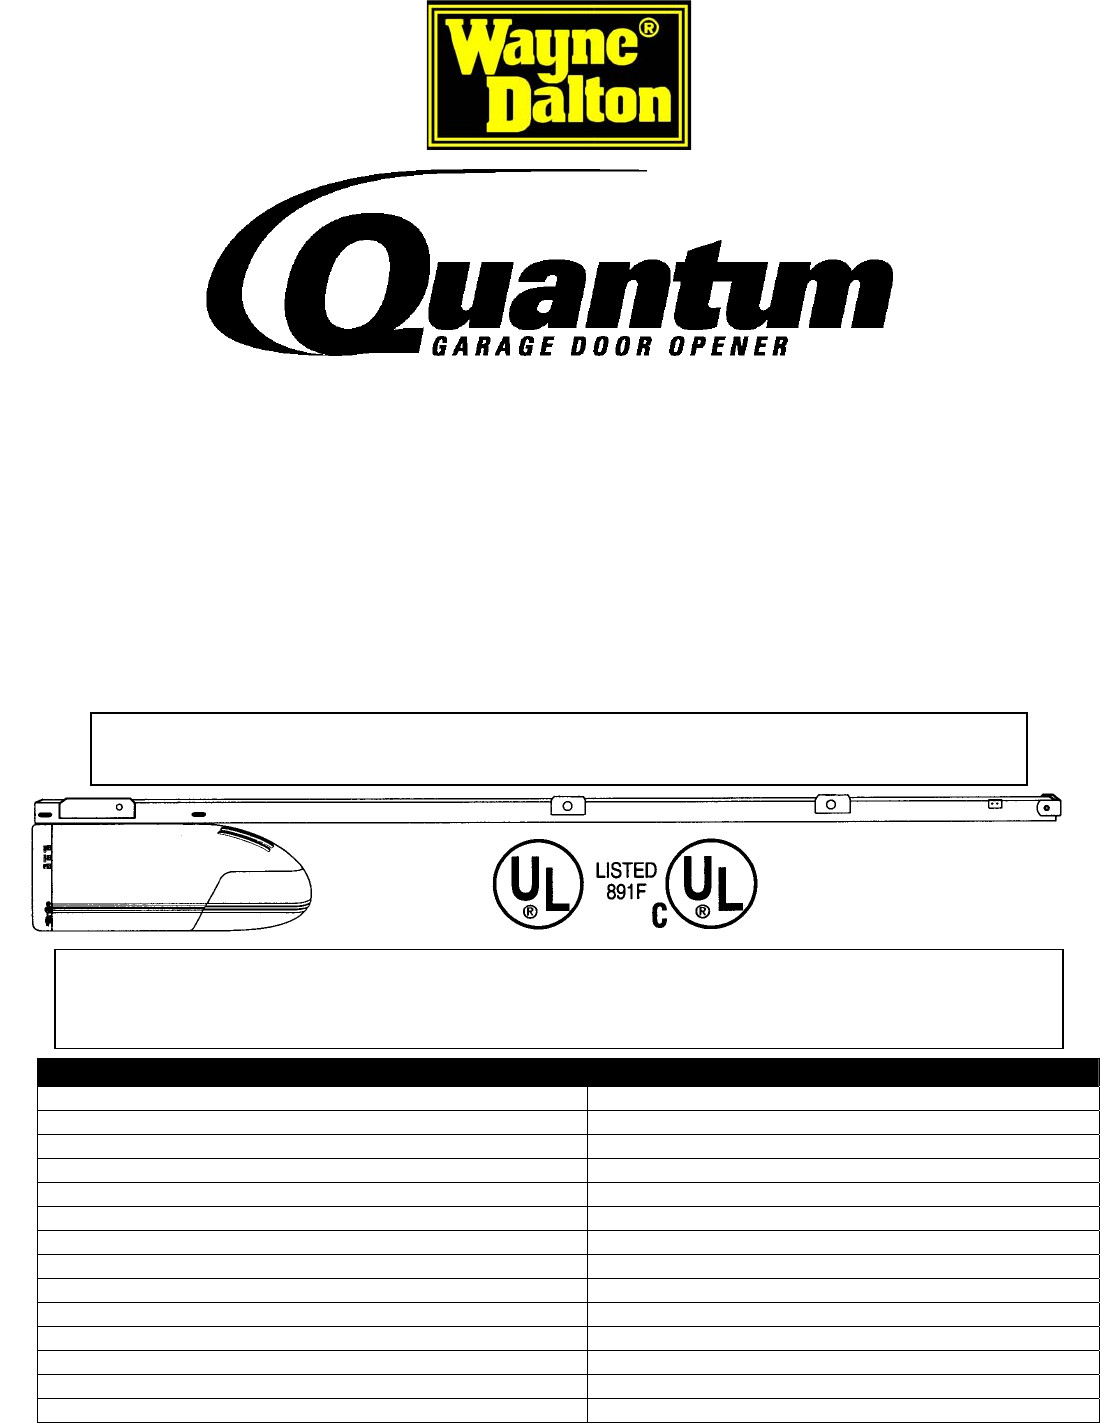 Quantum Garage Door Opener
 Quantum Garage Door Opener 3214 User Guide